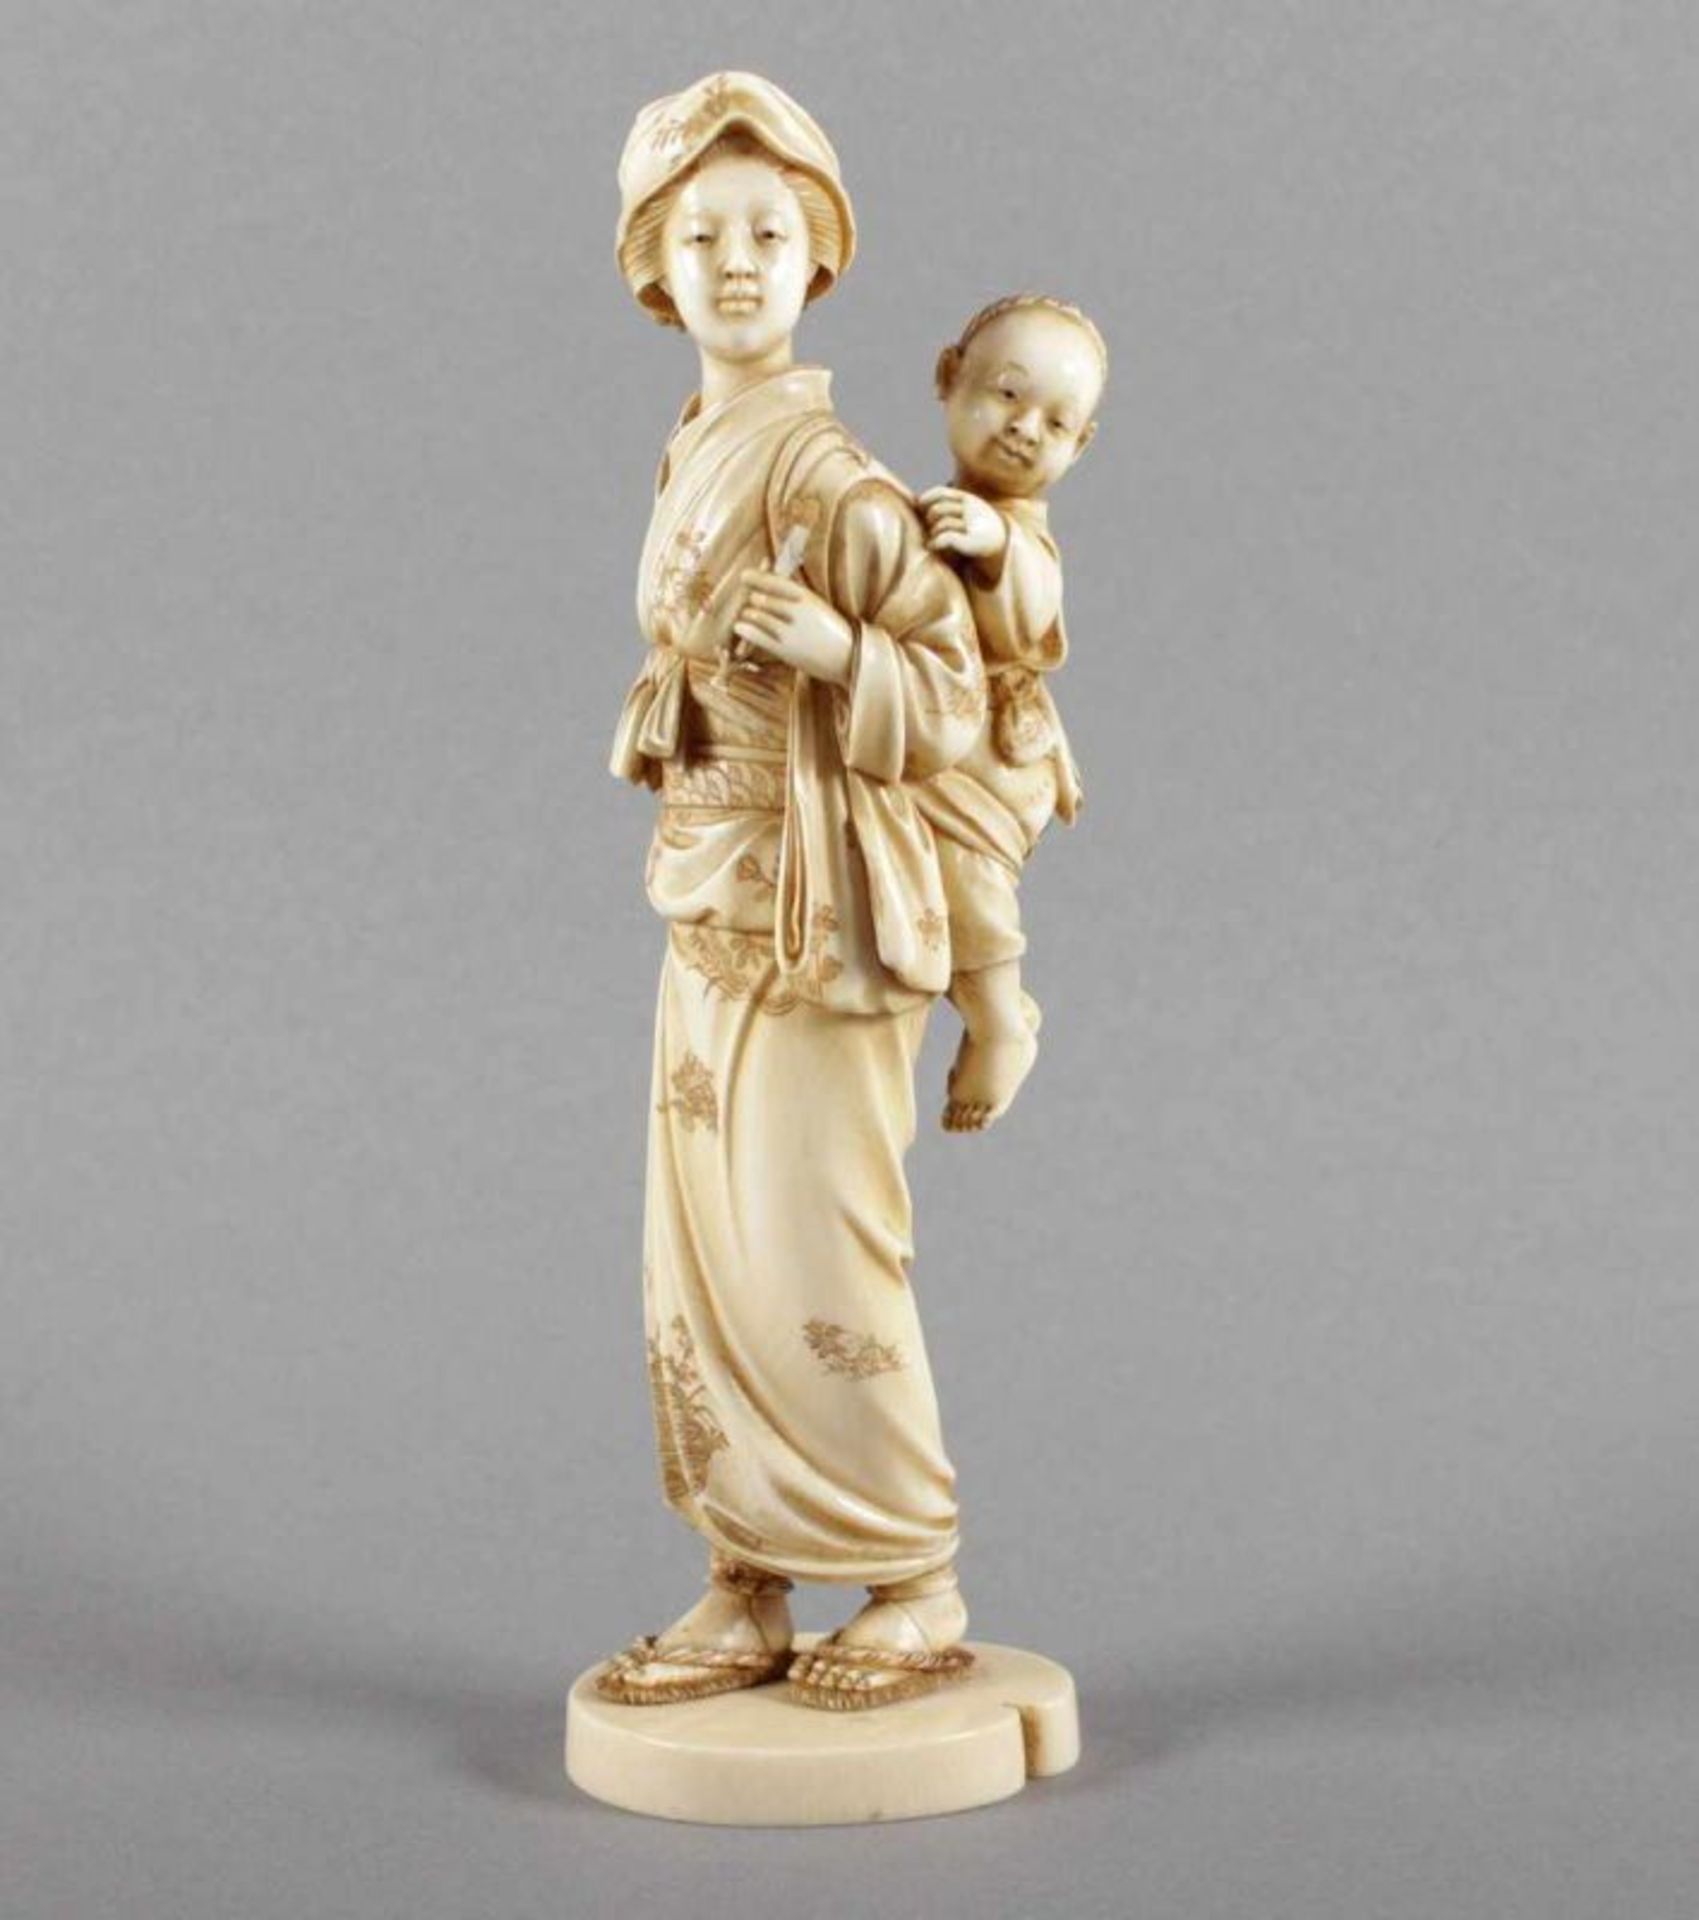 OKIMONO, Elfenbein, junge Frau mit auf den Rücken gebundenem Kind, geschwärzt graviert, H 21,5,